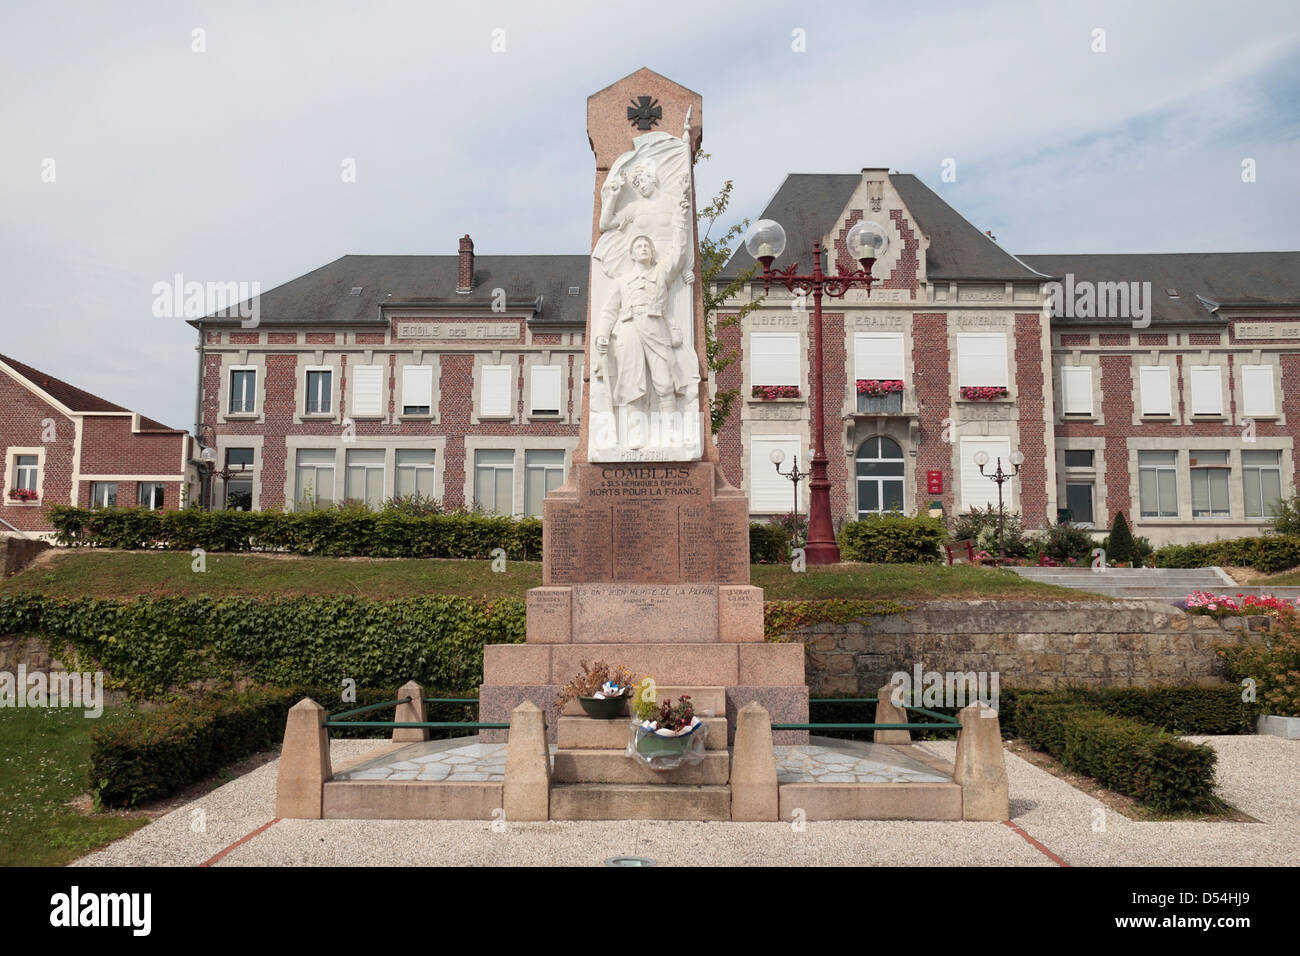 Première Guerre mondiale monument en combles, Somme, Picardie, France. Banque D'Images